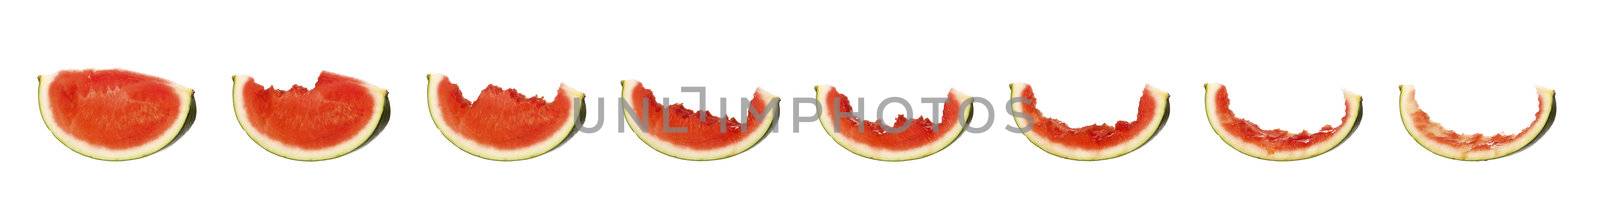 Tasty watermelon in progress